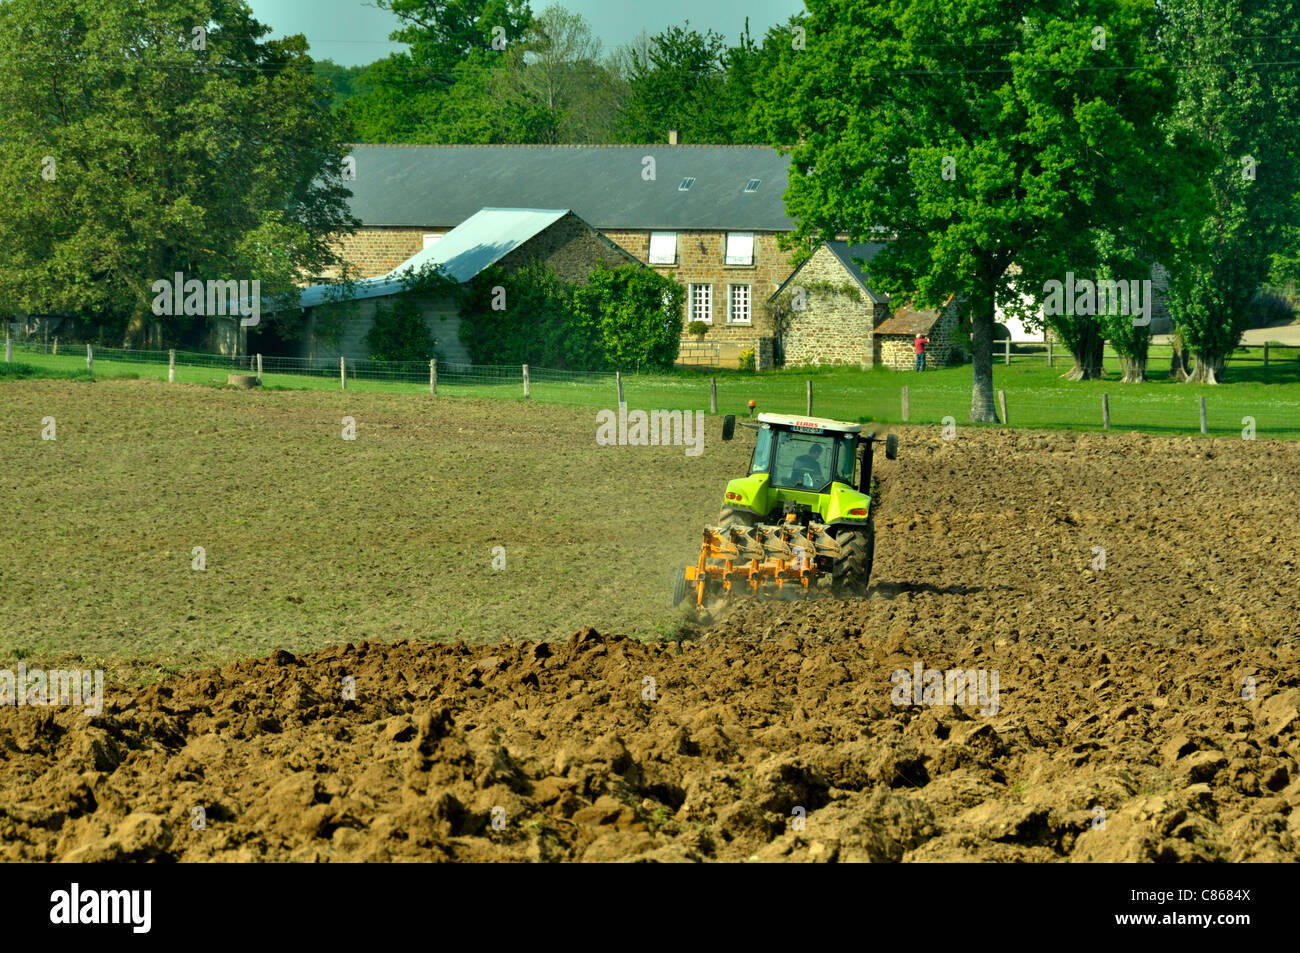 Un tracteur laboure un champ, une ferme en arrière-plan (Mayenne, Loire, France). Banque D'Images